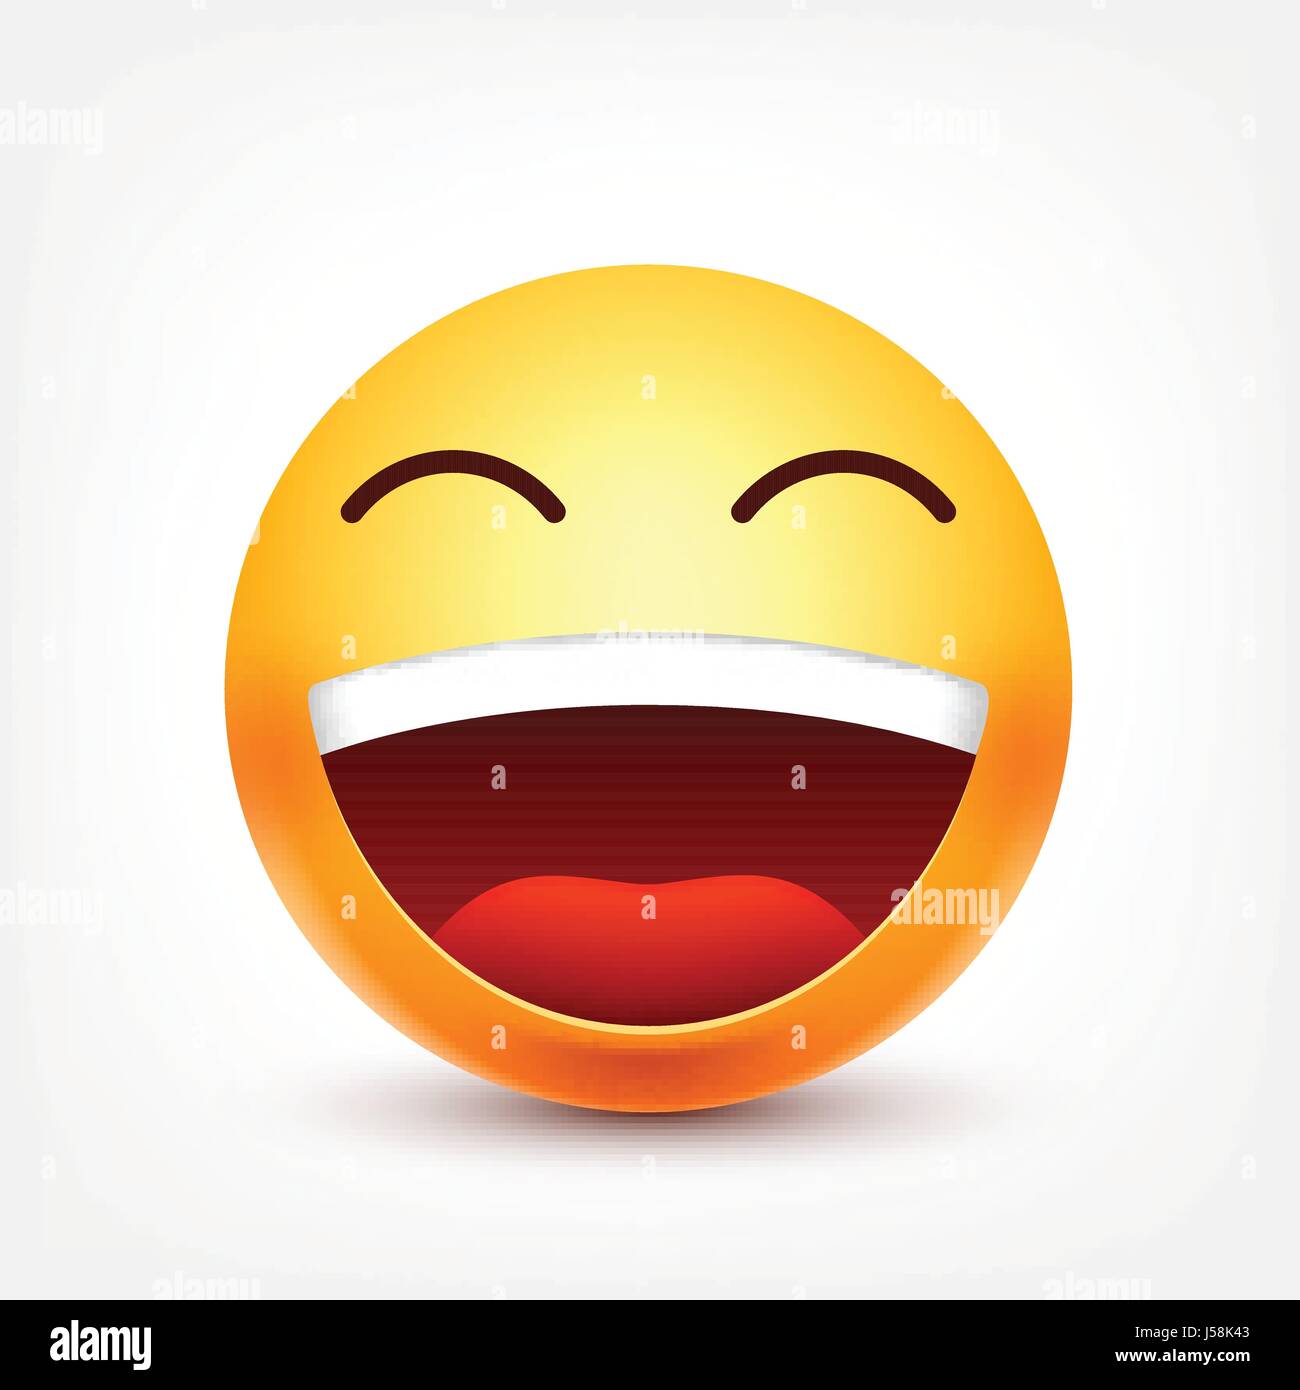 Smiley,ridere emoticon. Faccia gialla con le emozioni. L'espressione del viso. 3D realistici gli Emoji. Divertente personaggio dei fumetti.L'umore. Icona del Web. Illustrazione Vettoriale. Illustrazione Vettoriale